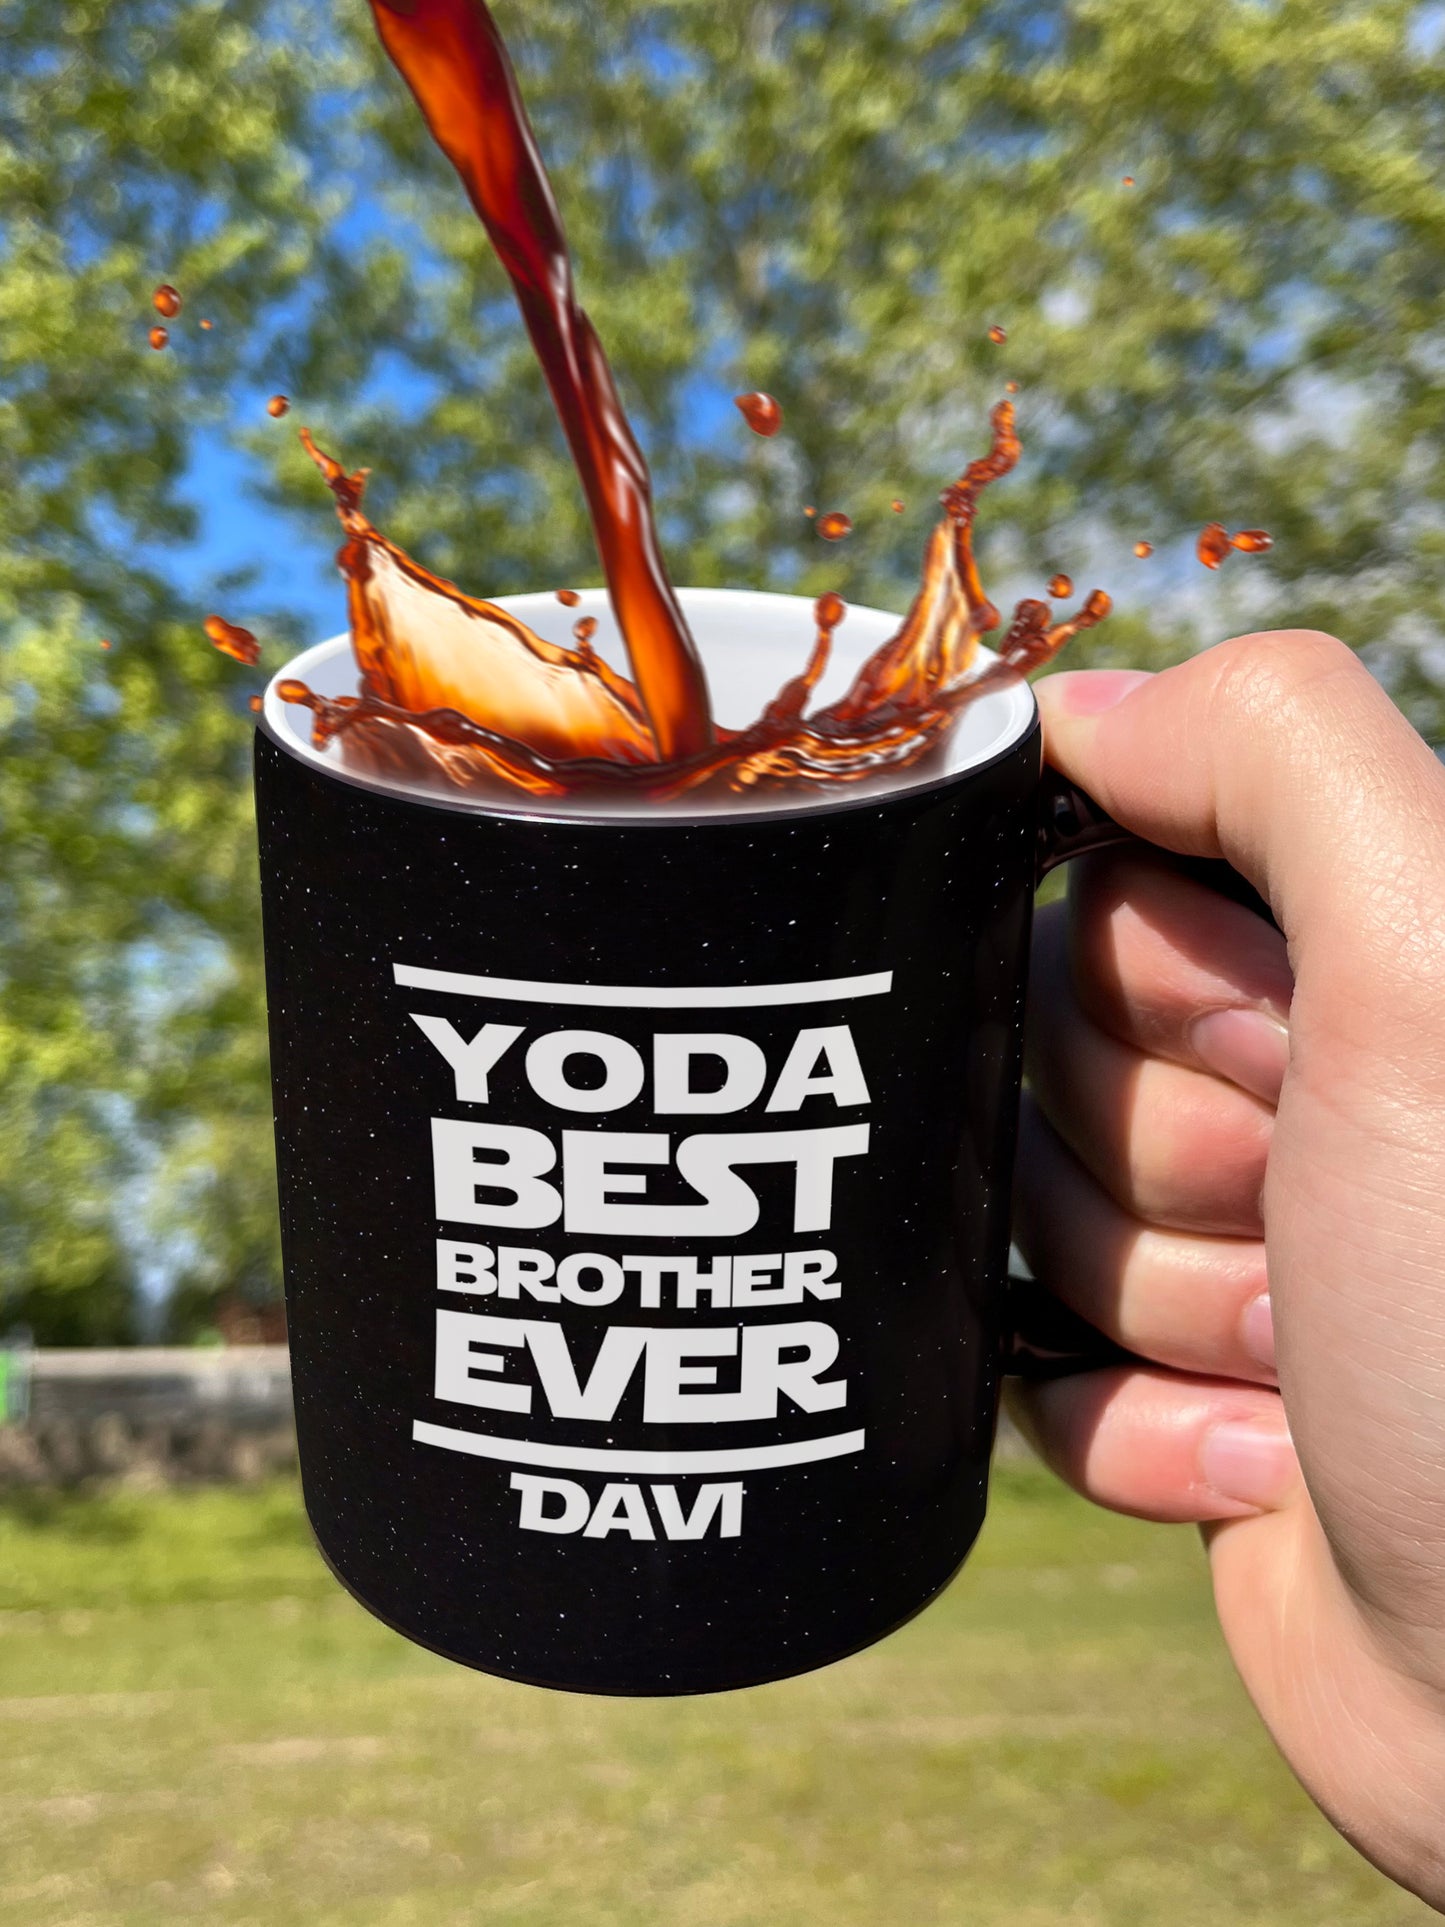 Caneca Personalizada Yoda Star Wars - Faça ou Não Faça